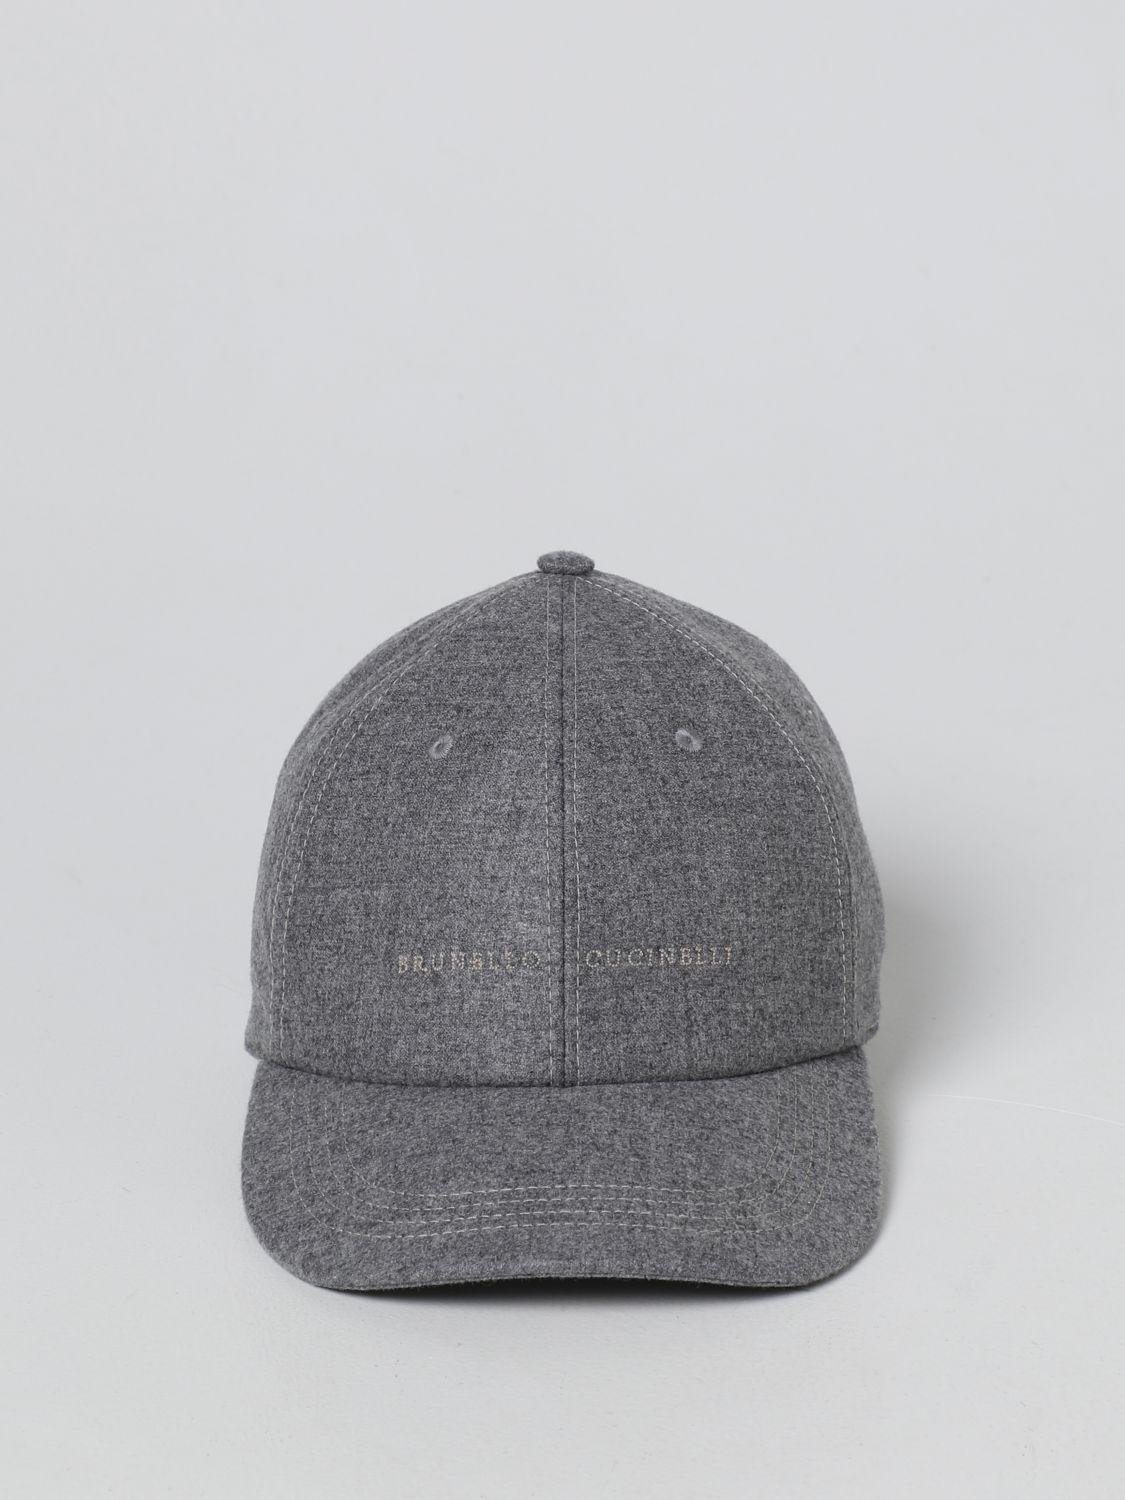 Hat Brunello Cucinelli: Brunello Cucinelli cashmere and silk blend hat grey 2